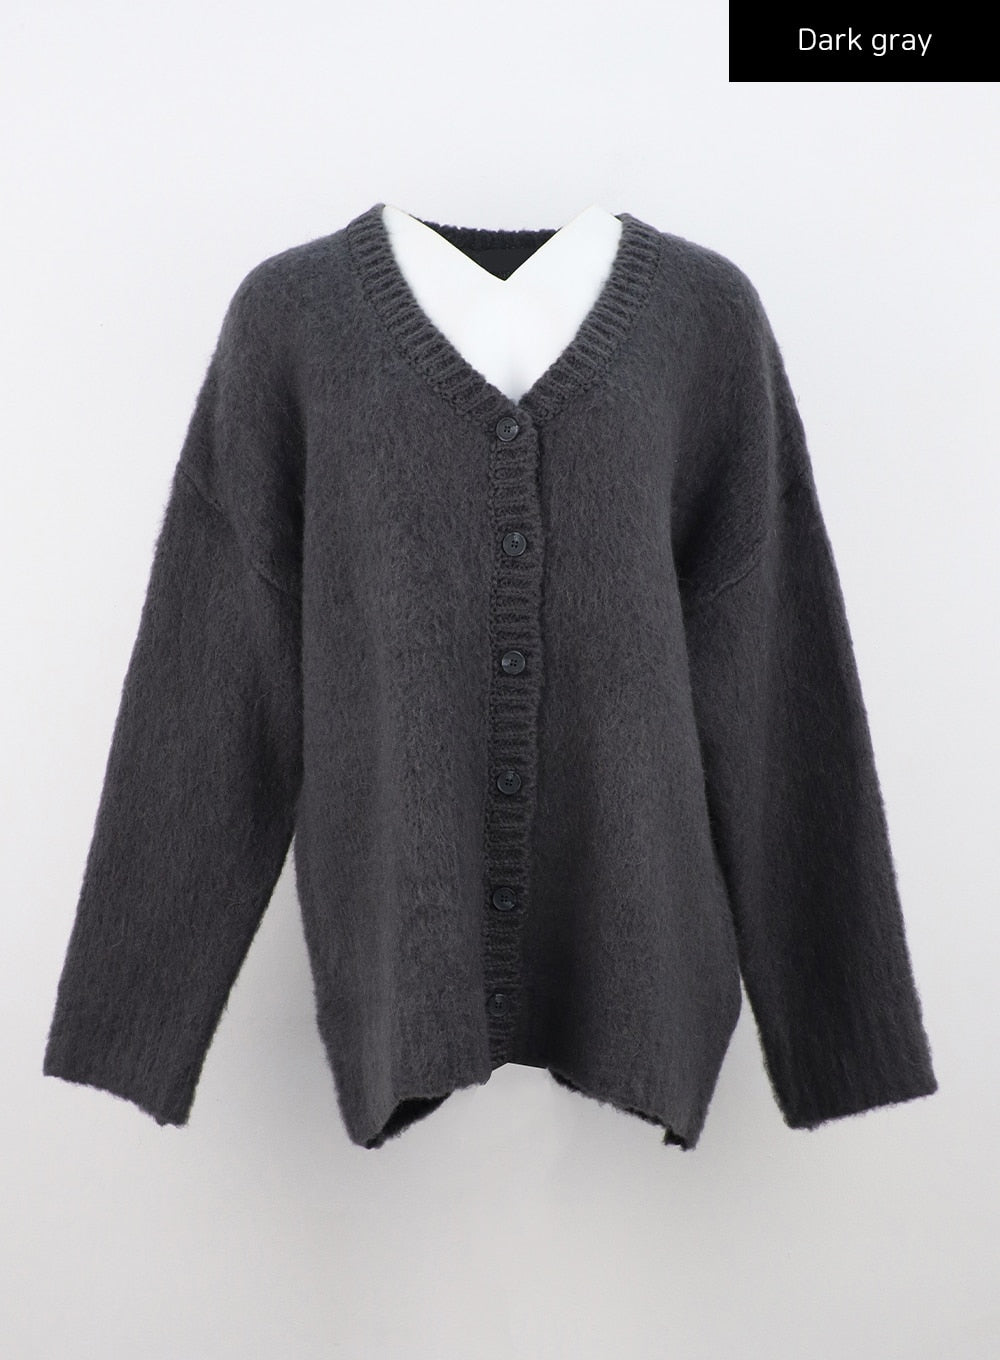 v-neck-loose-fit-knit-cardigan-cn303 / Dark gray